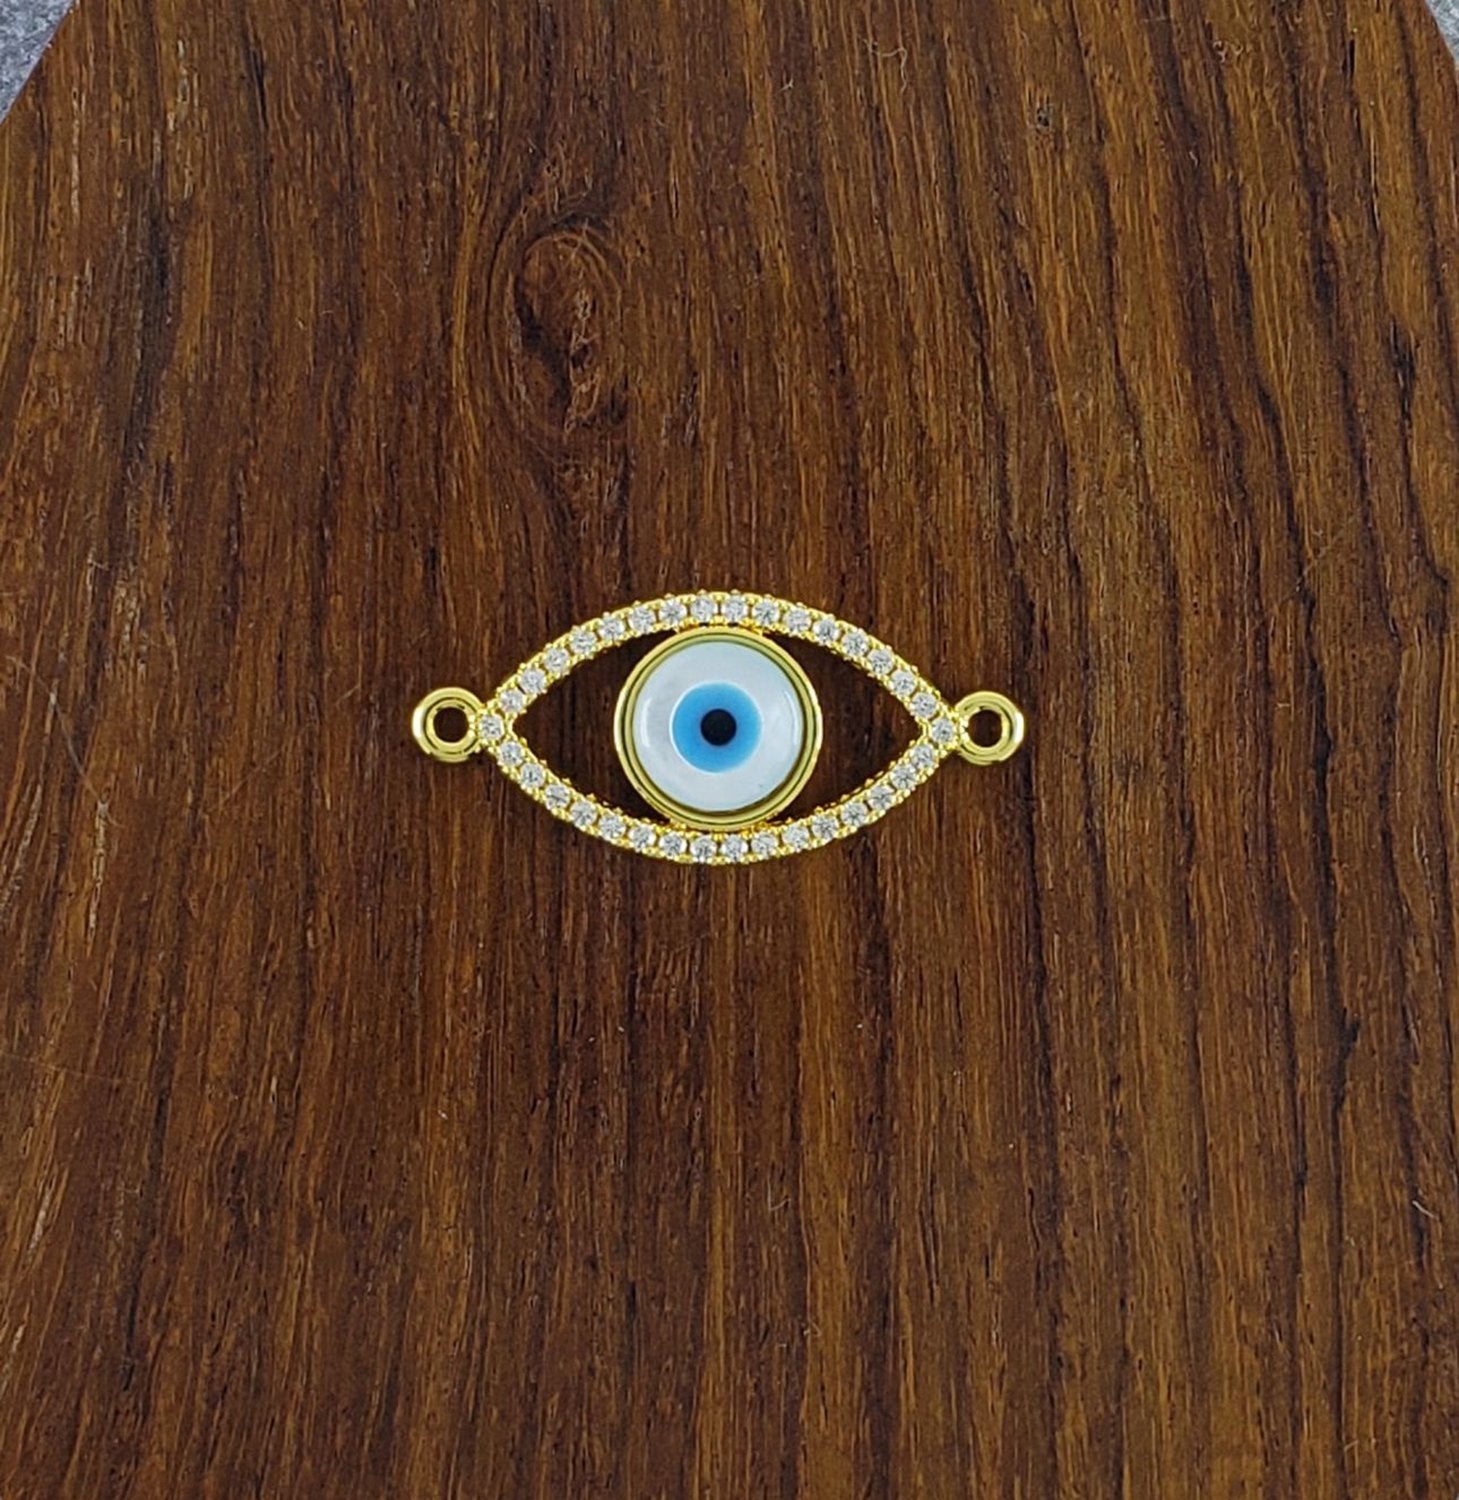 Abalone Evil Eye Gold Green Black Copper Charm For Women